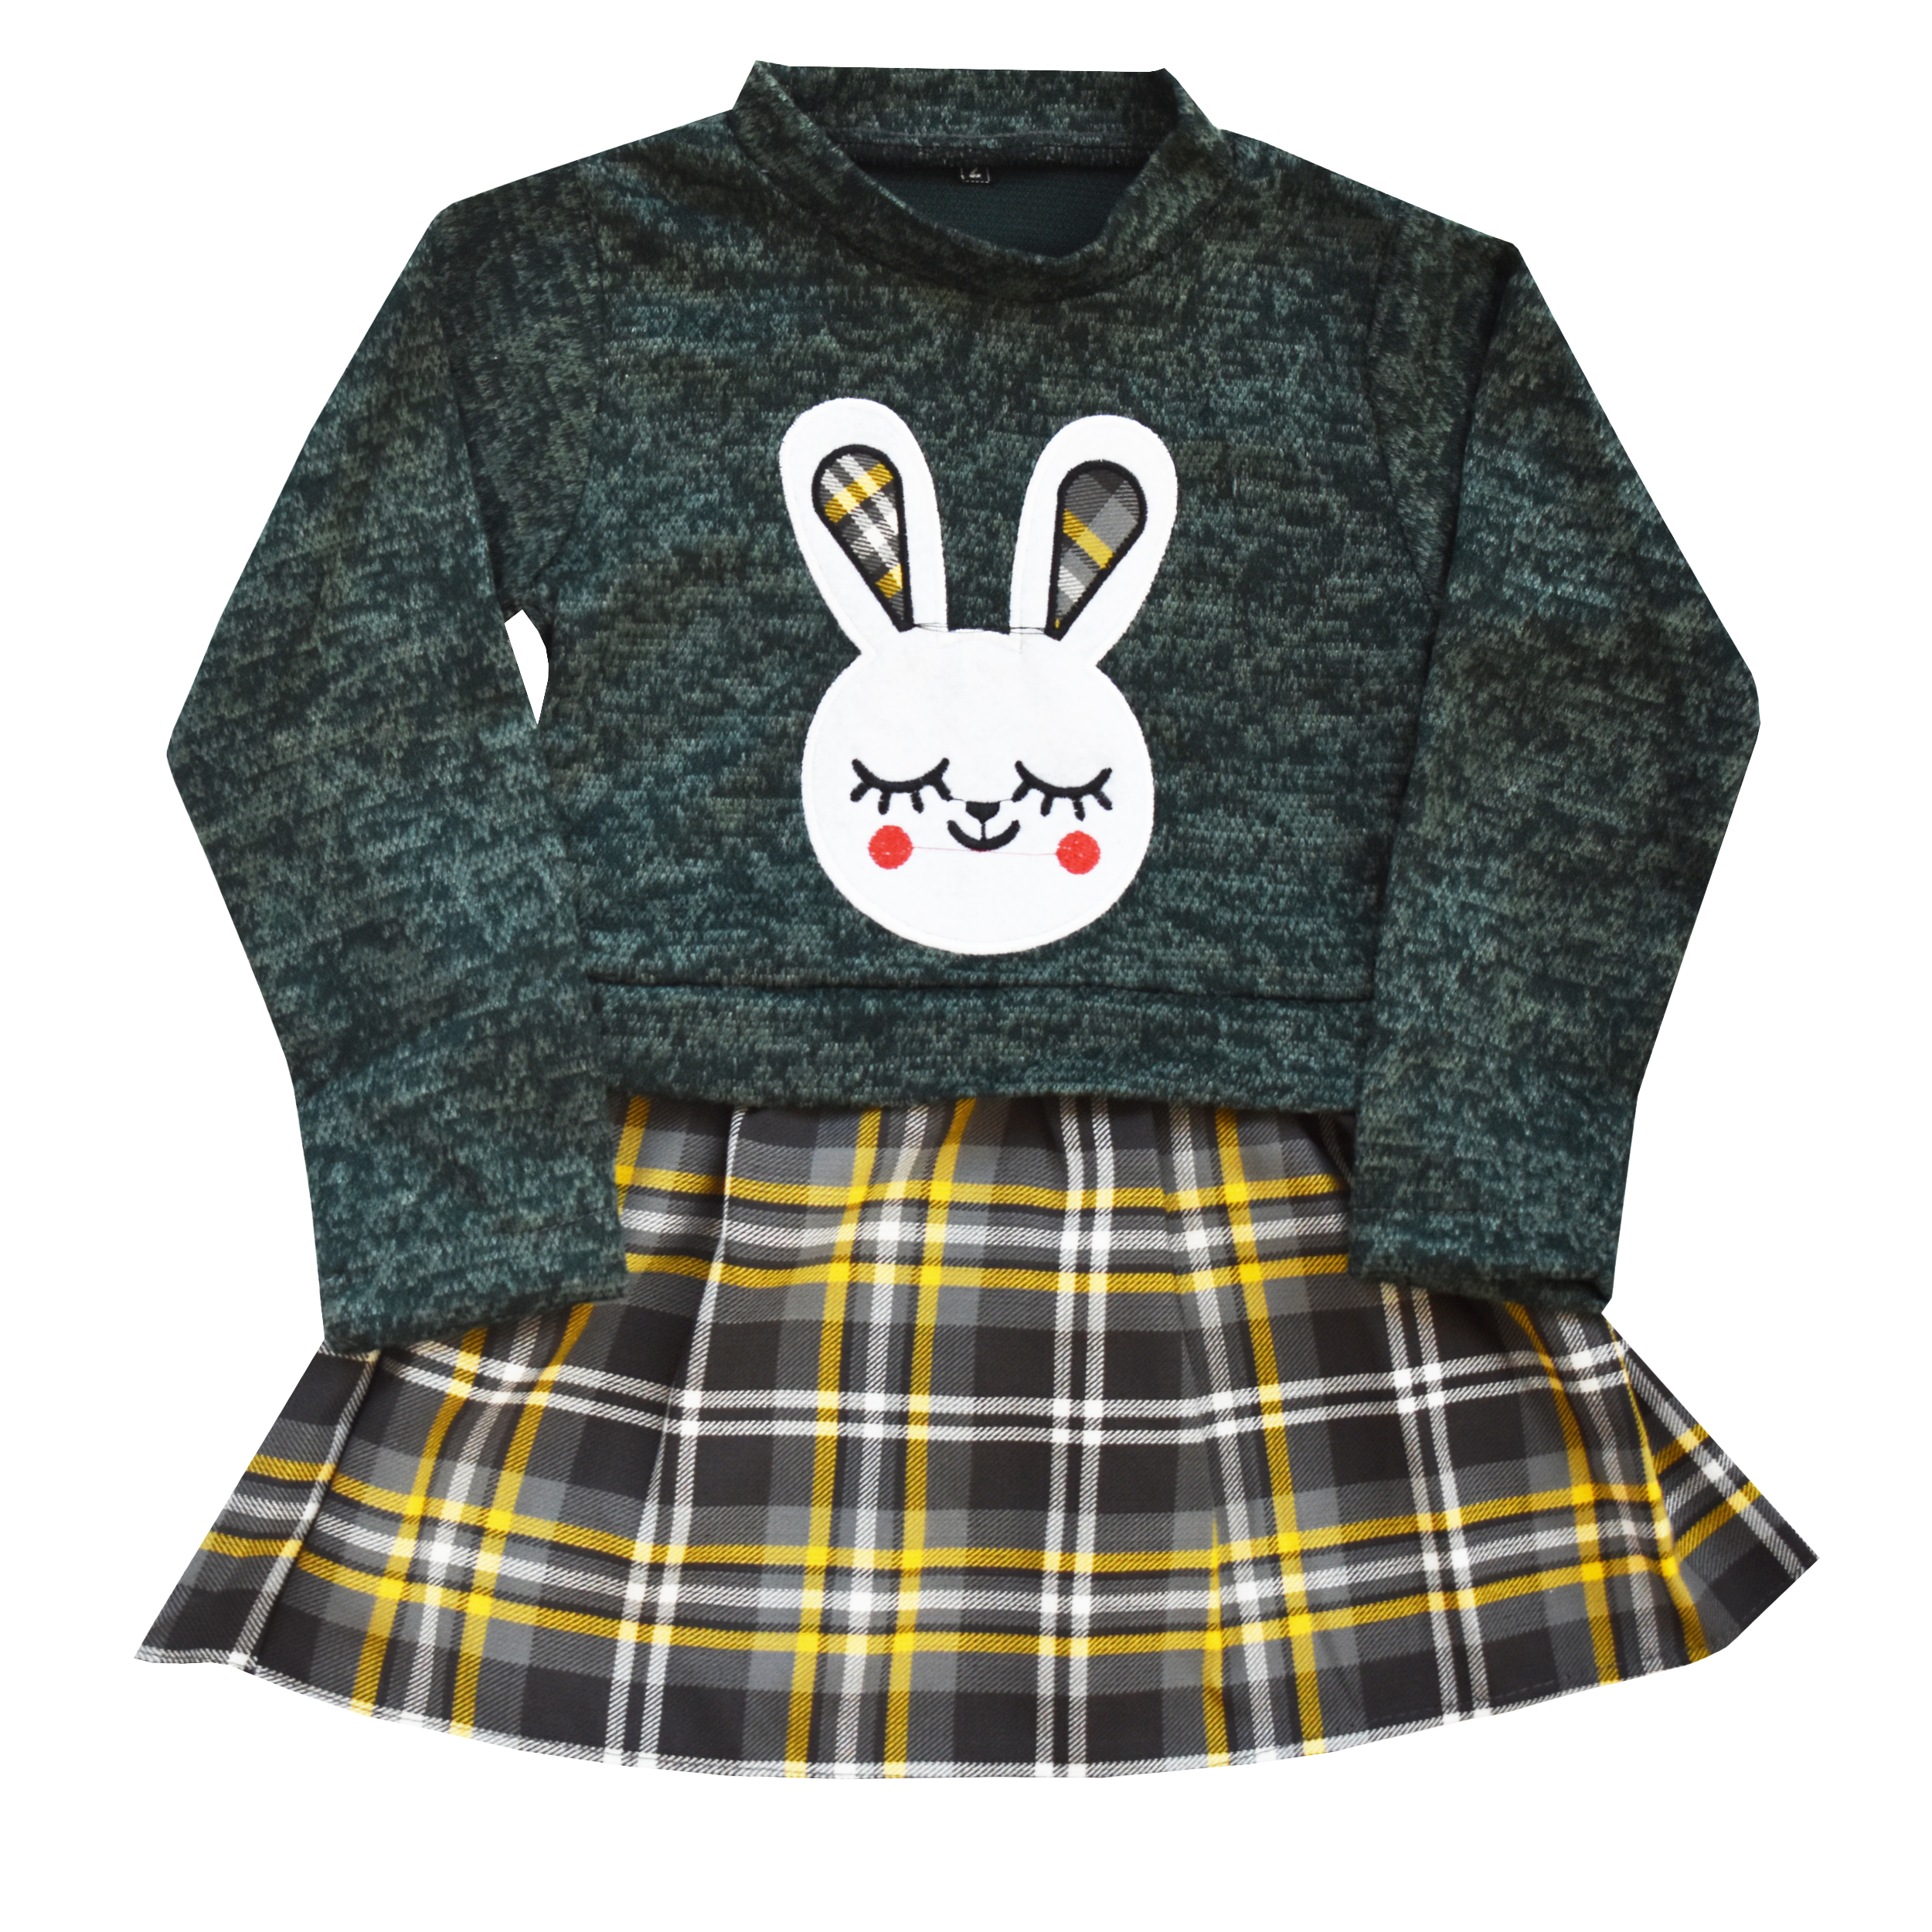 پیراهن دخترانه مدل خرگوش کد s 210